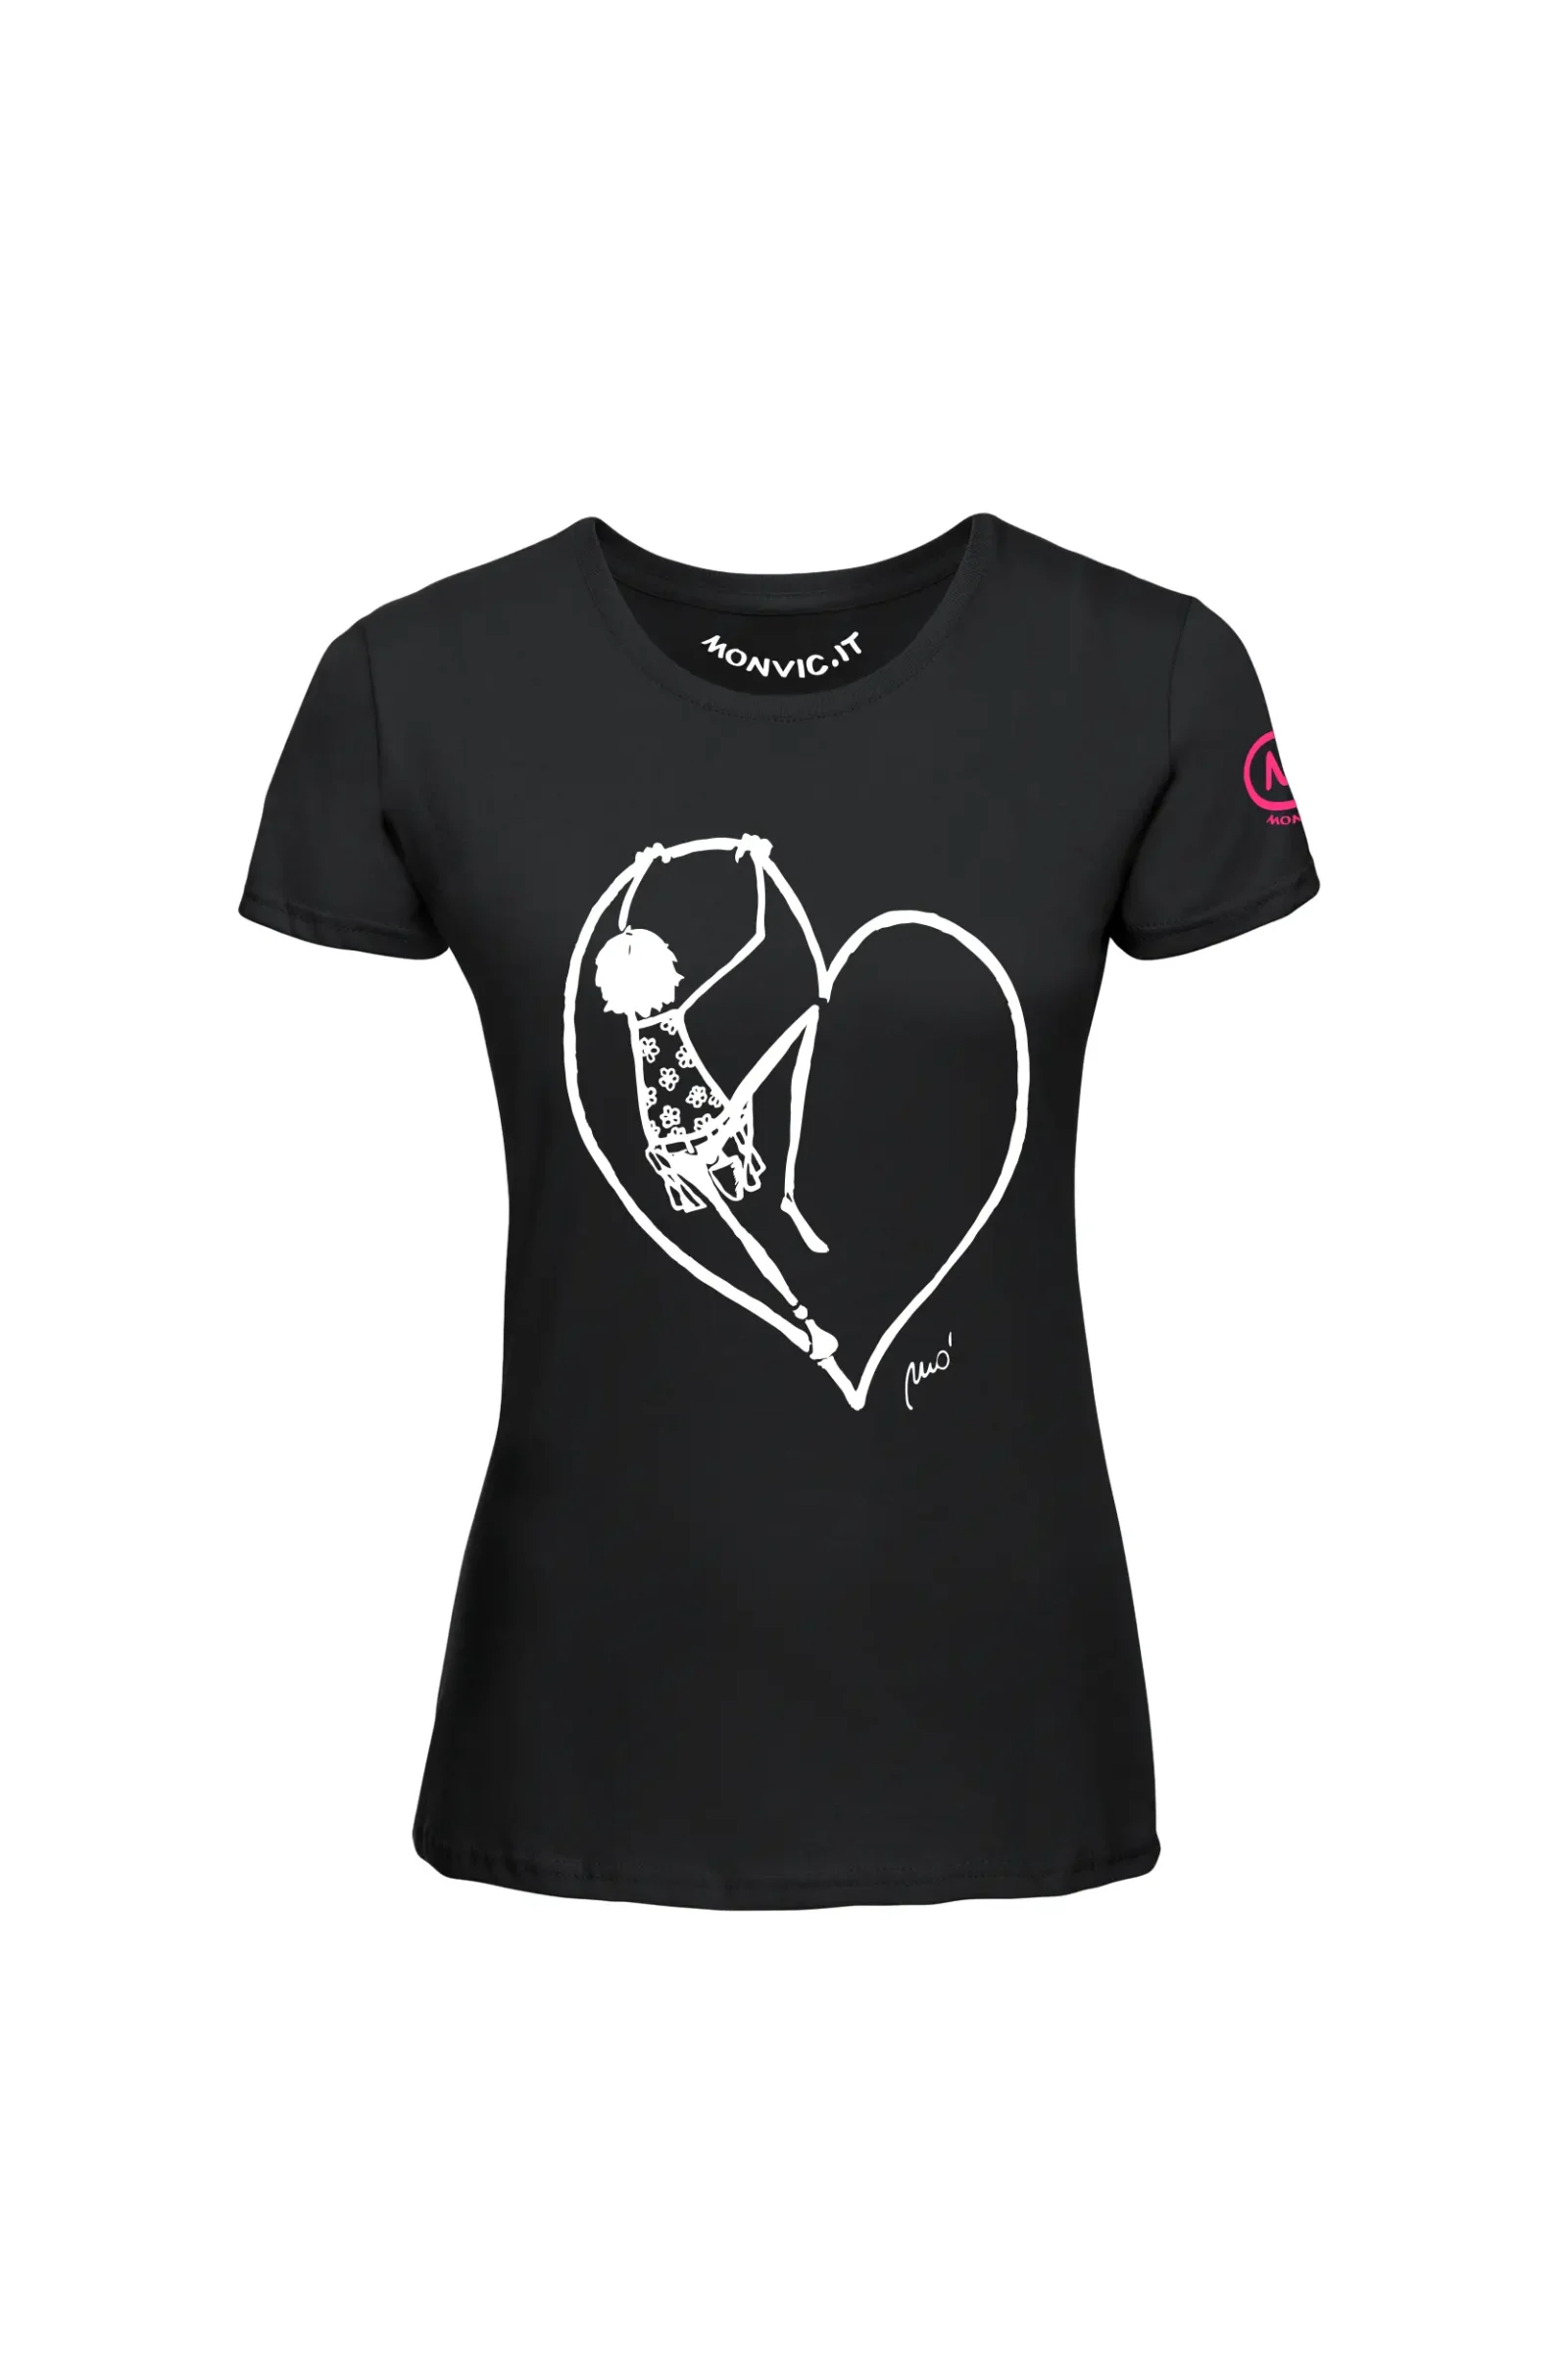 T-shirt escalade femme - coton noir - "Pina" - SHARON by MONVIC